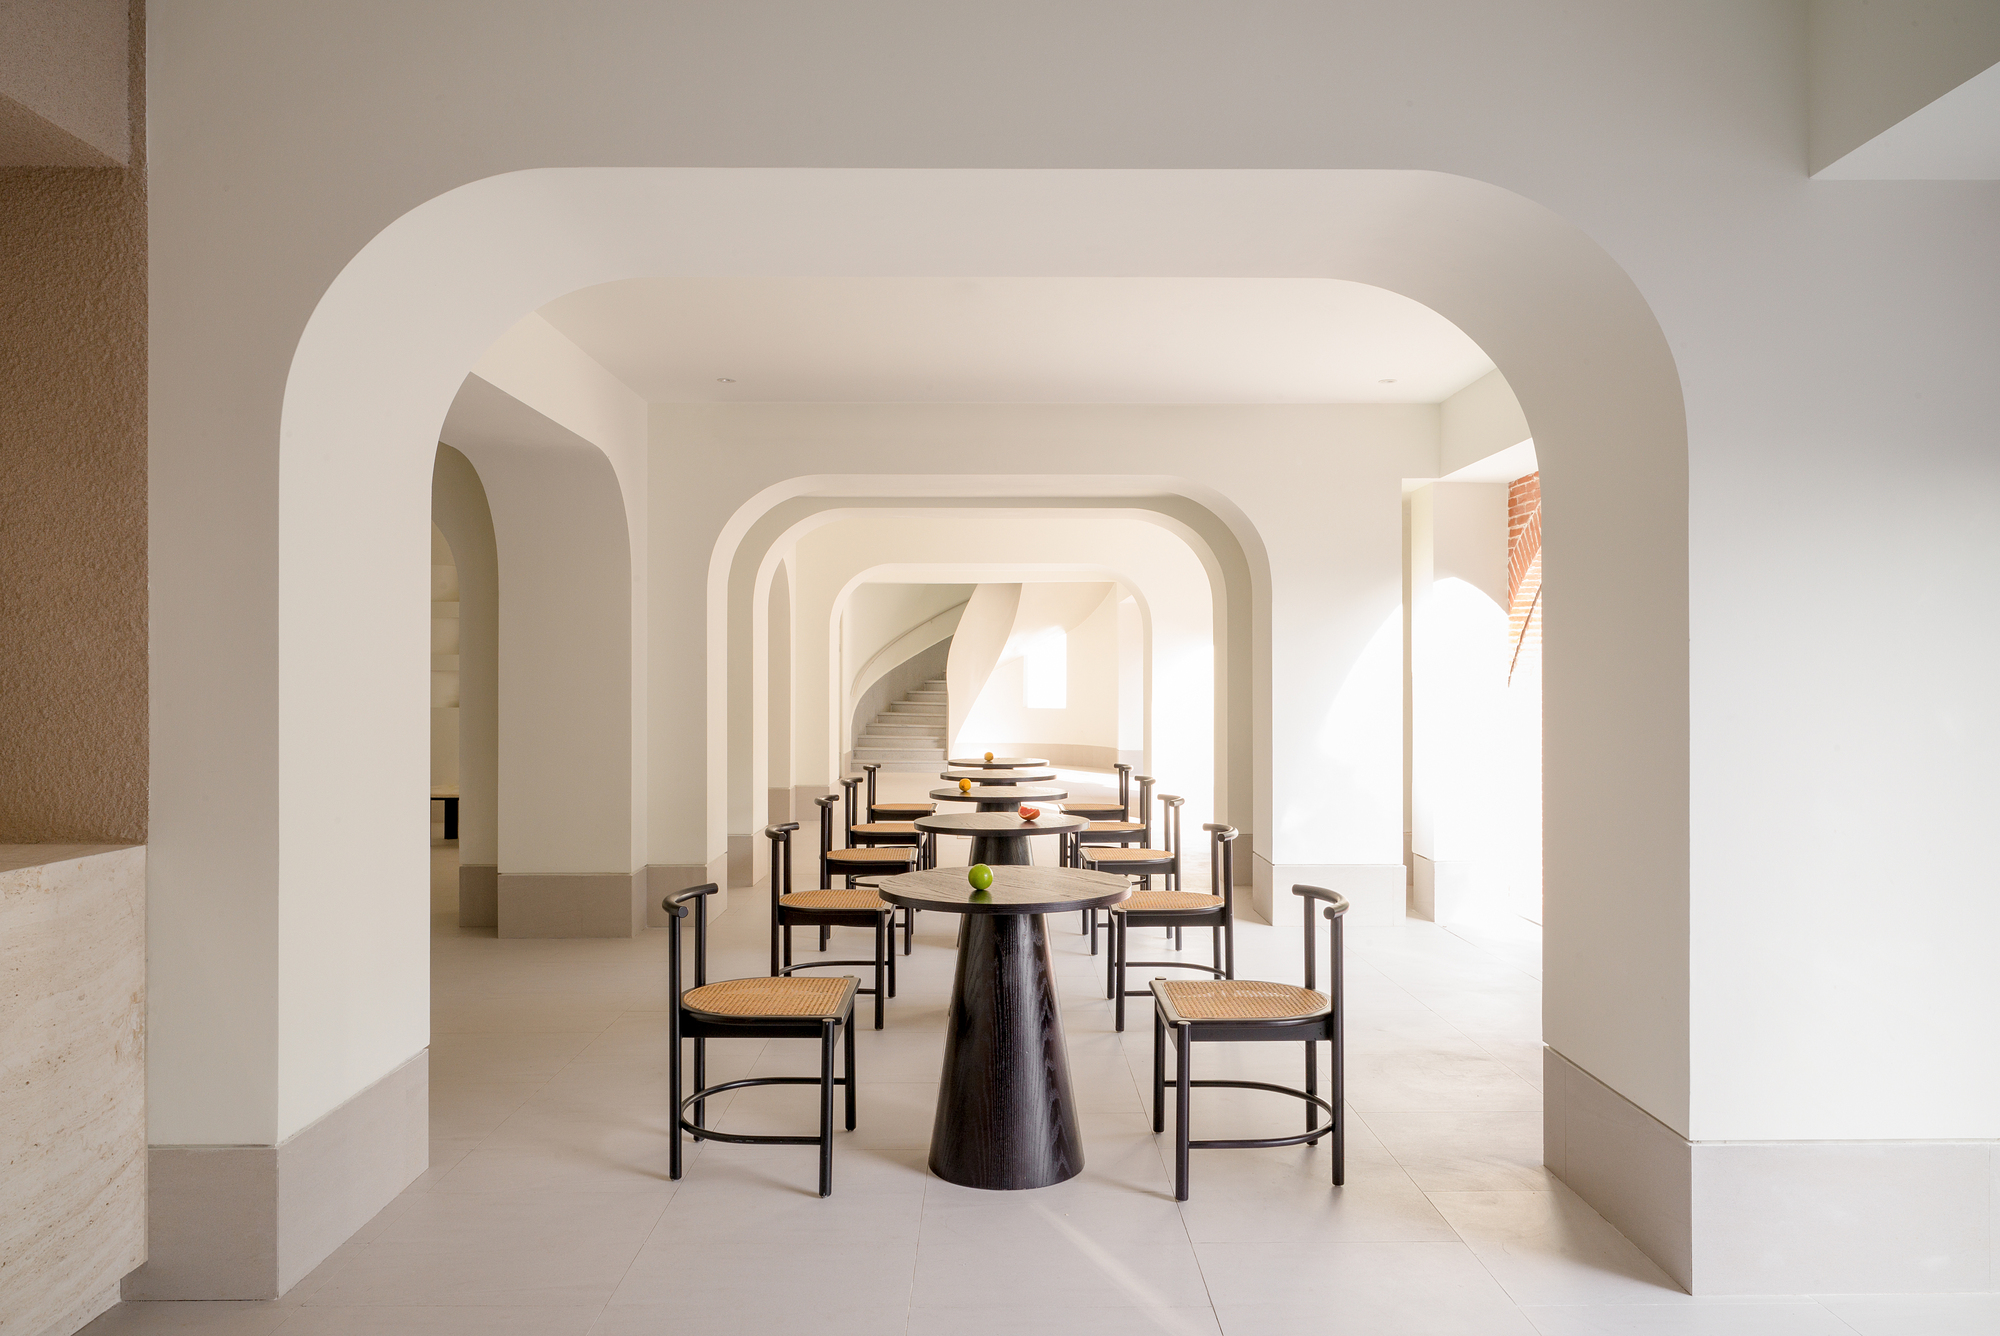 图片[4]|里奈酒店 / say architects|ART-Arrakis | 建筑室内设计的创新与灵感